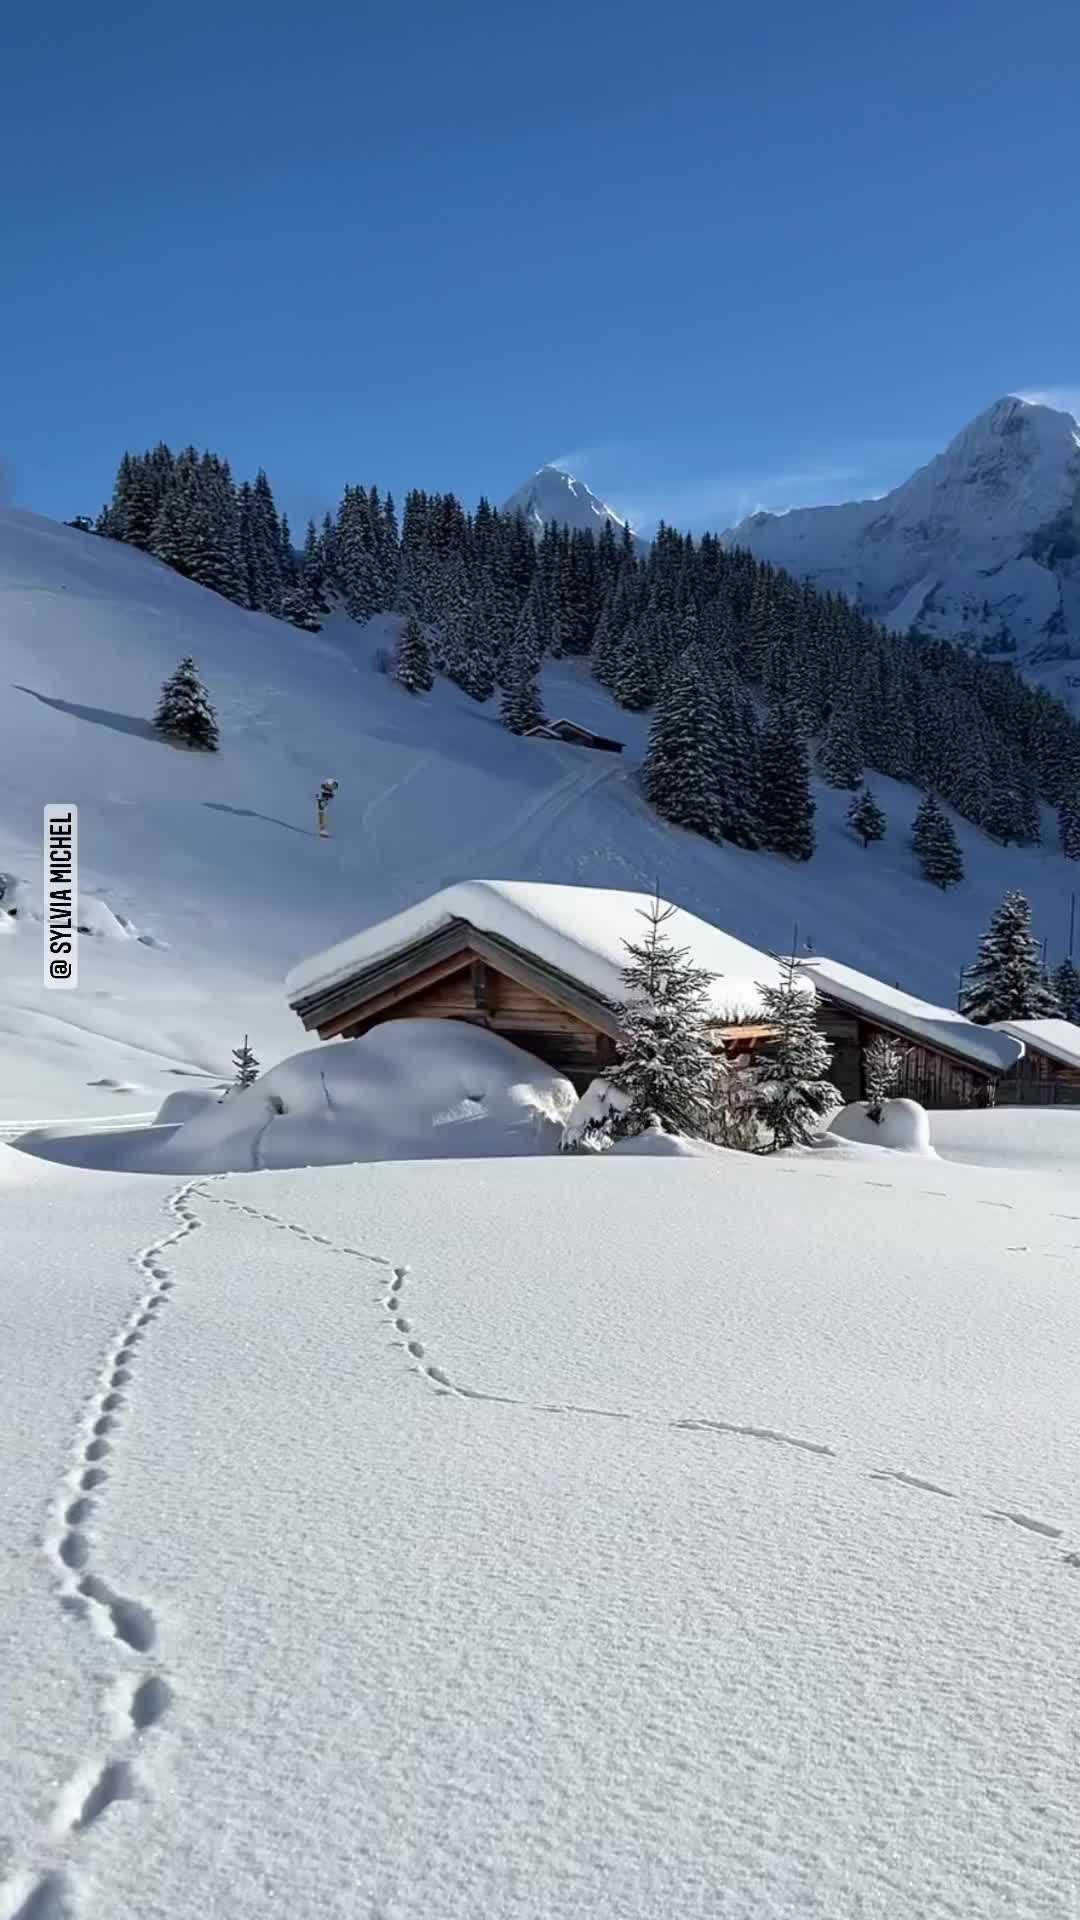 Winter Castle at Schilthorn, Switzerland